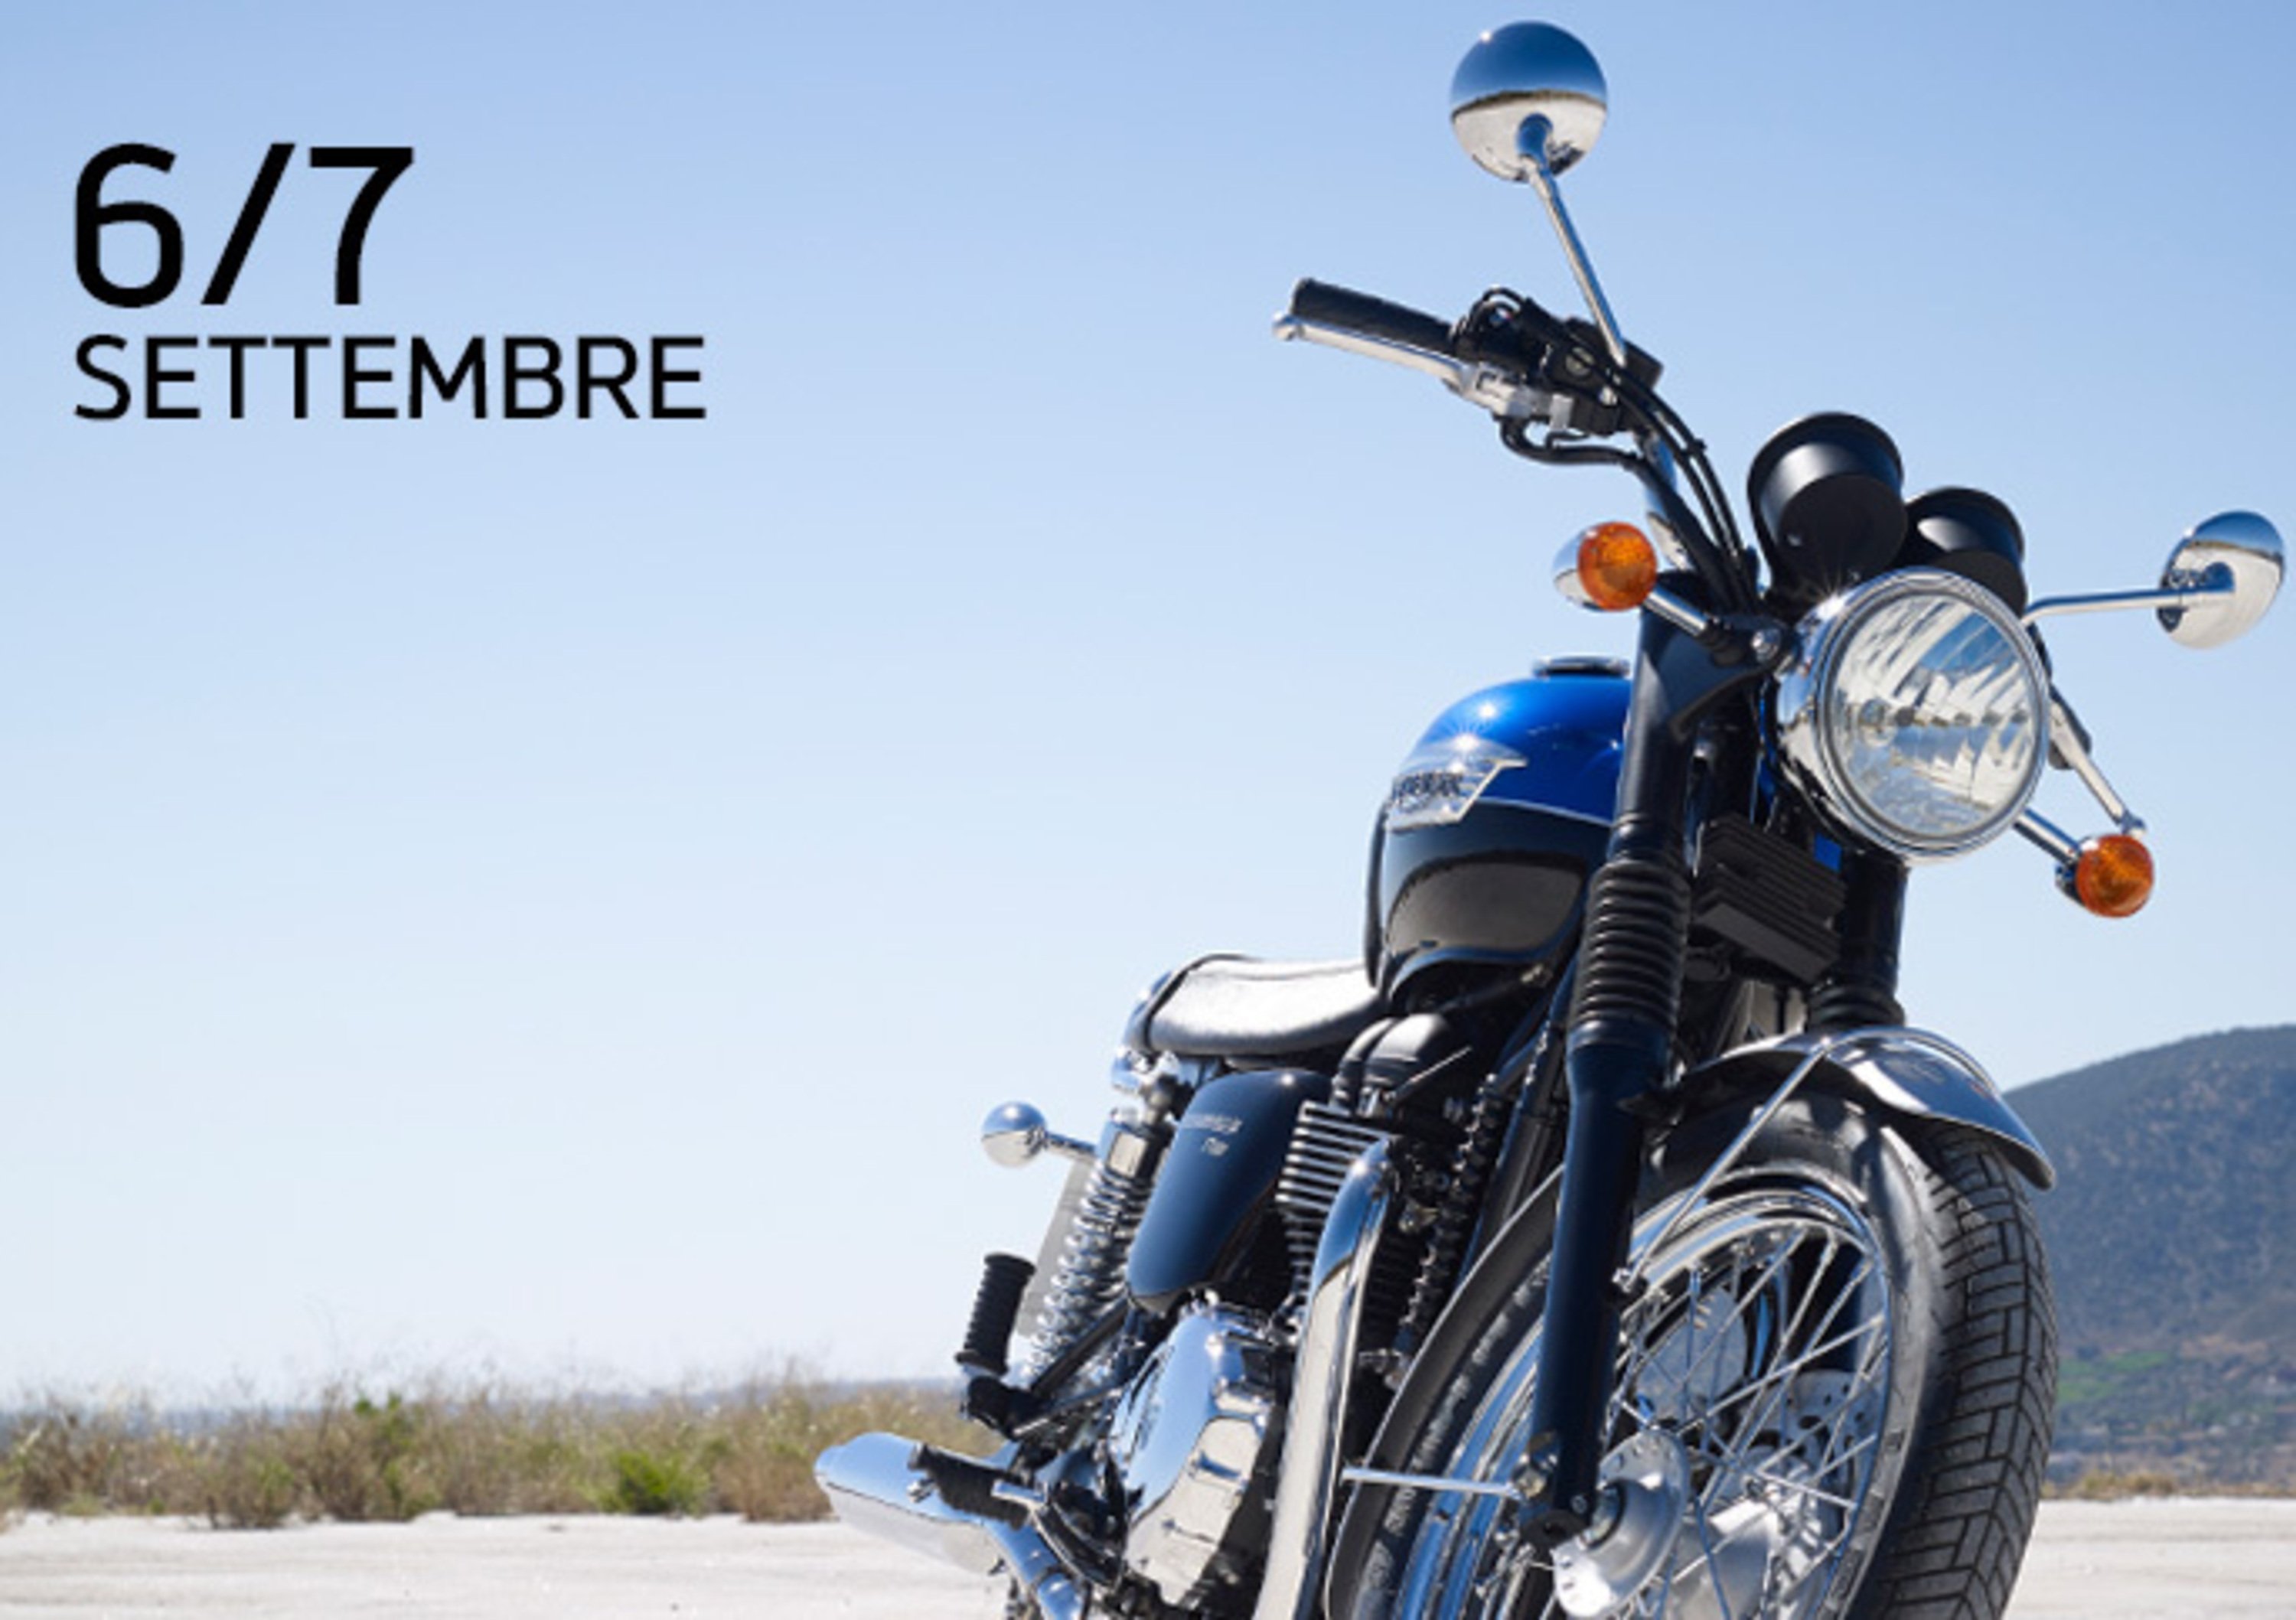 Demo ride Triumph, questo fine settimana a Pesaro